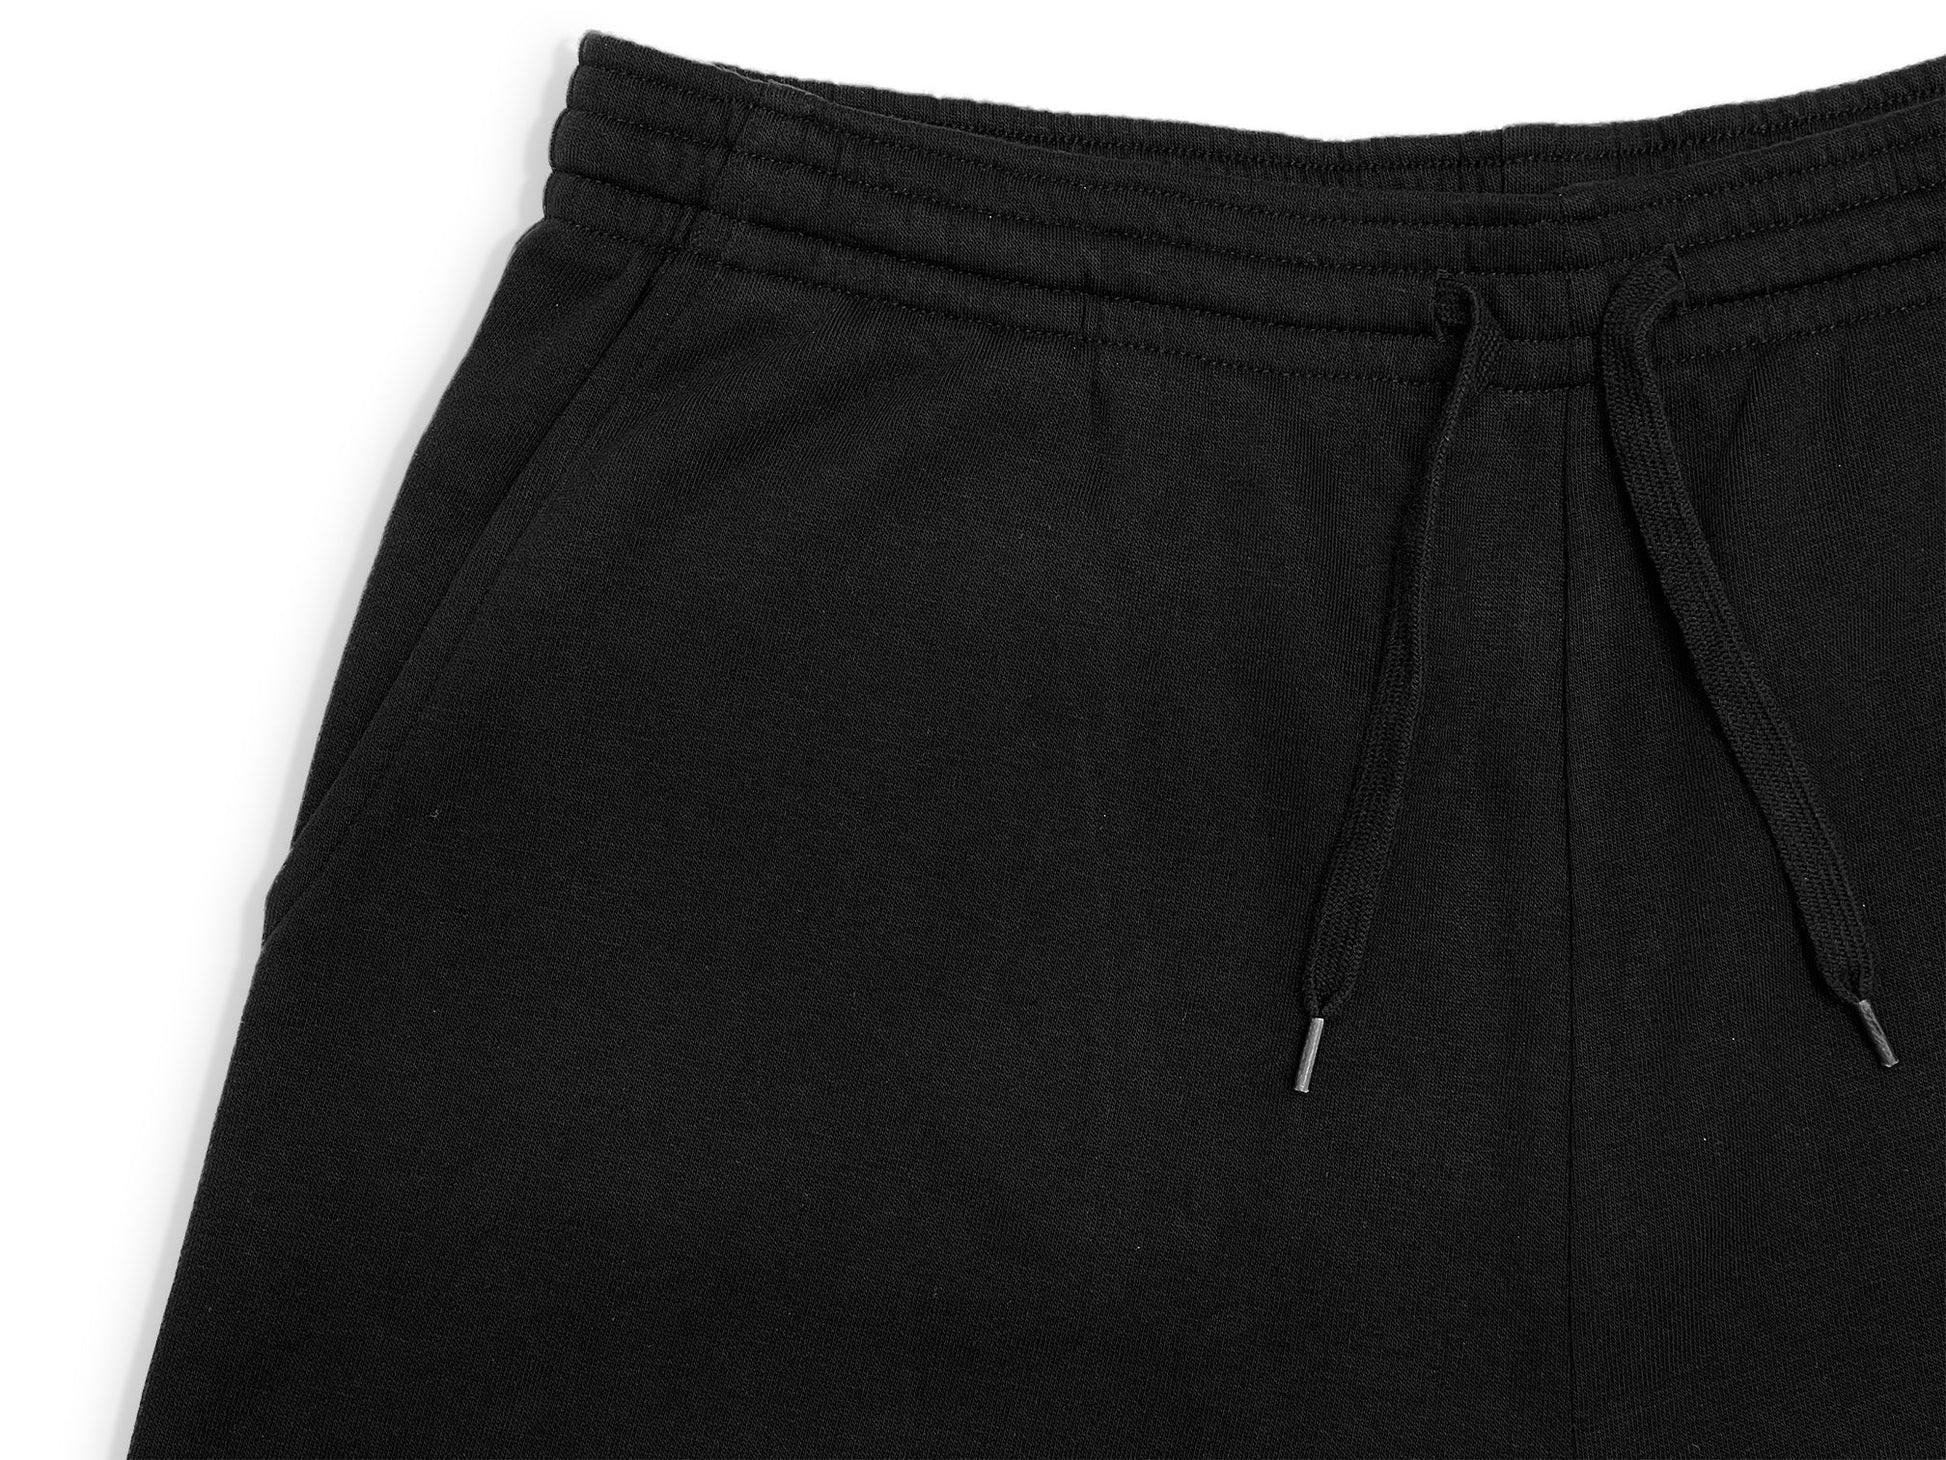 HERO - 6020 7’ Sweatshorts - Clay Shorts